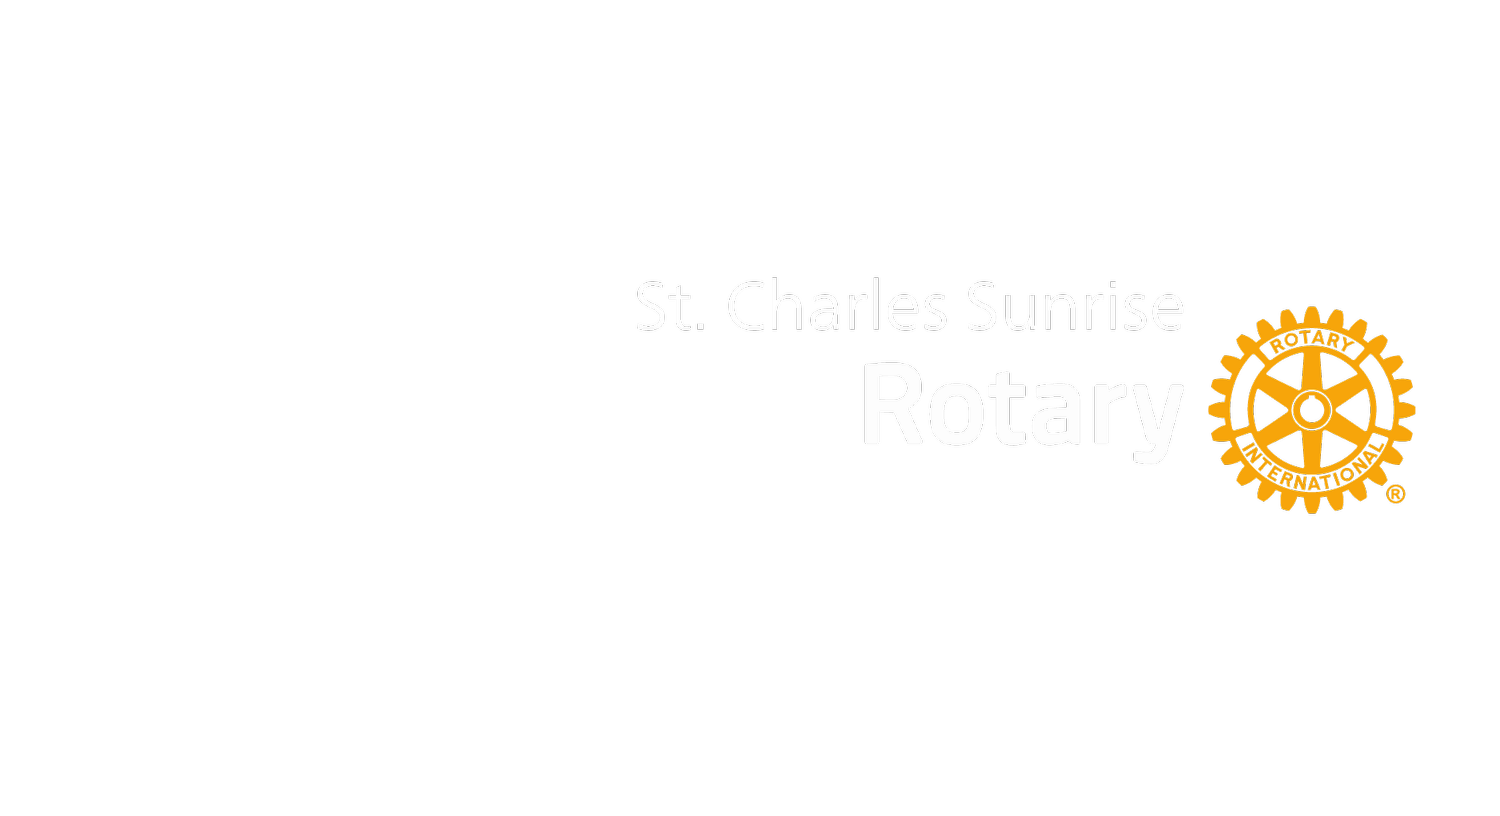 St. Charles Sunrise Rotary 